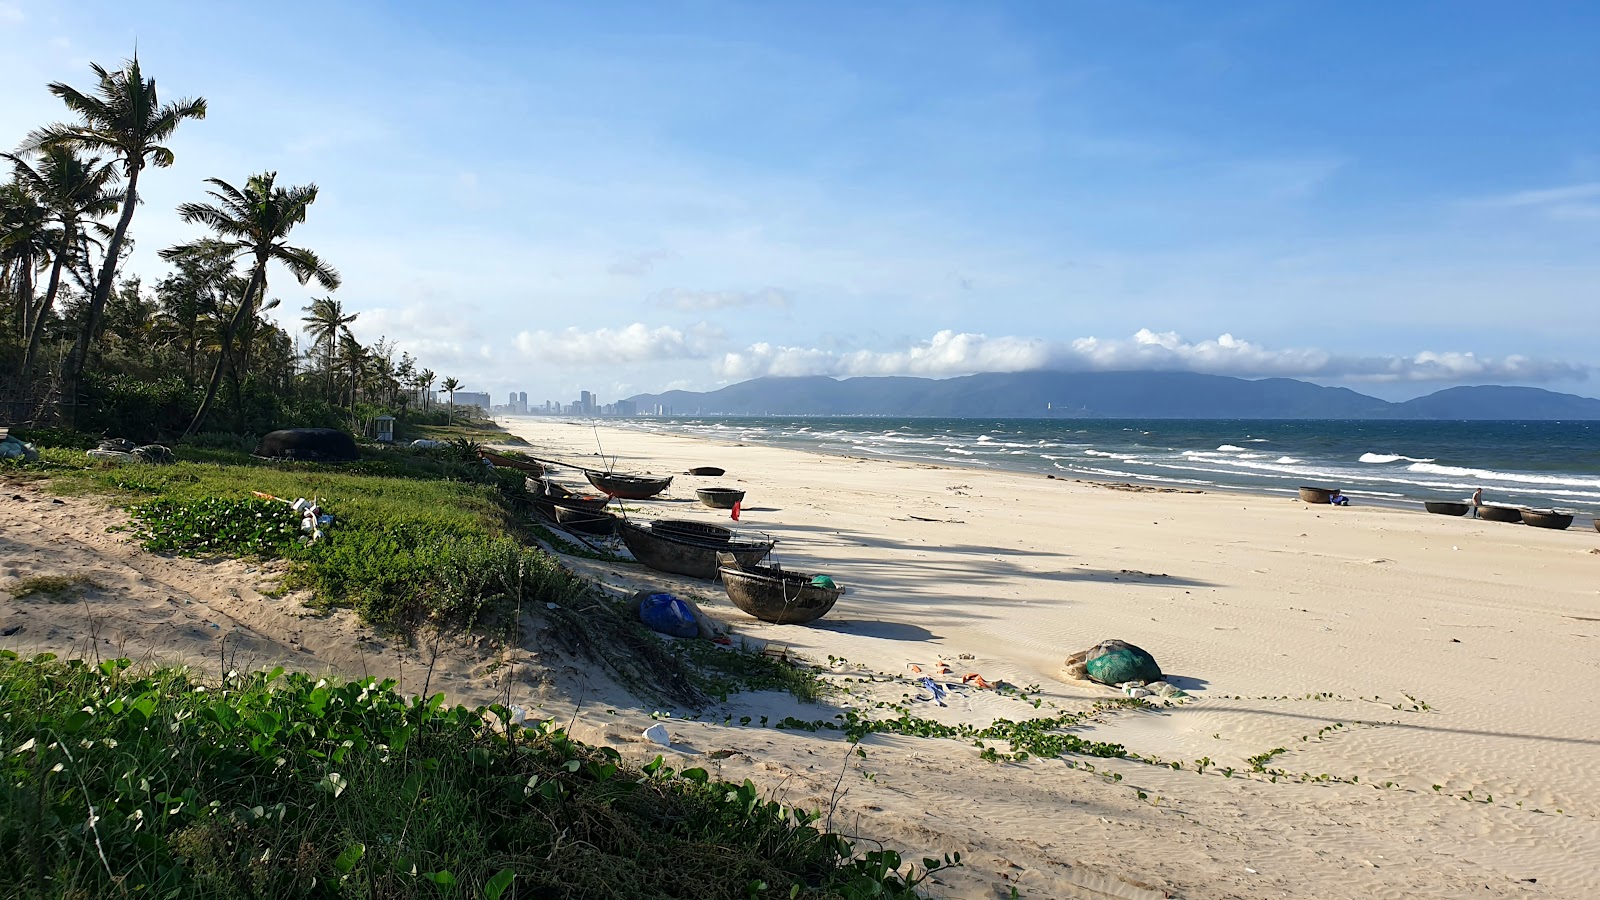 Photo de Tan Tra Beach - endroit populaire parmi les connaisseurs de la détente